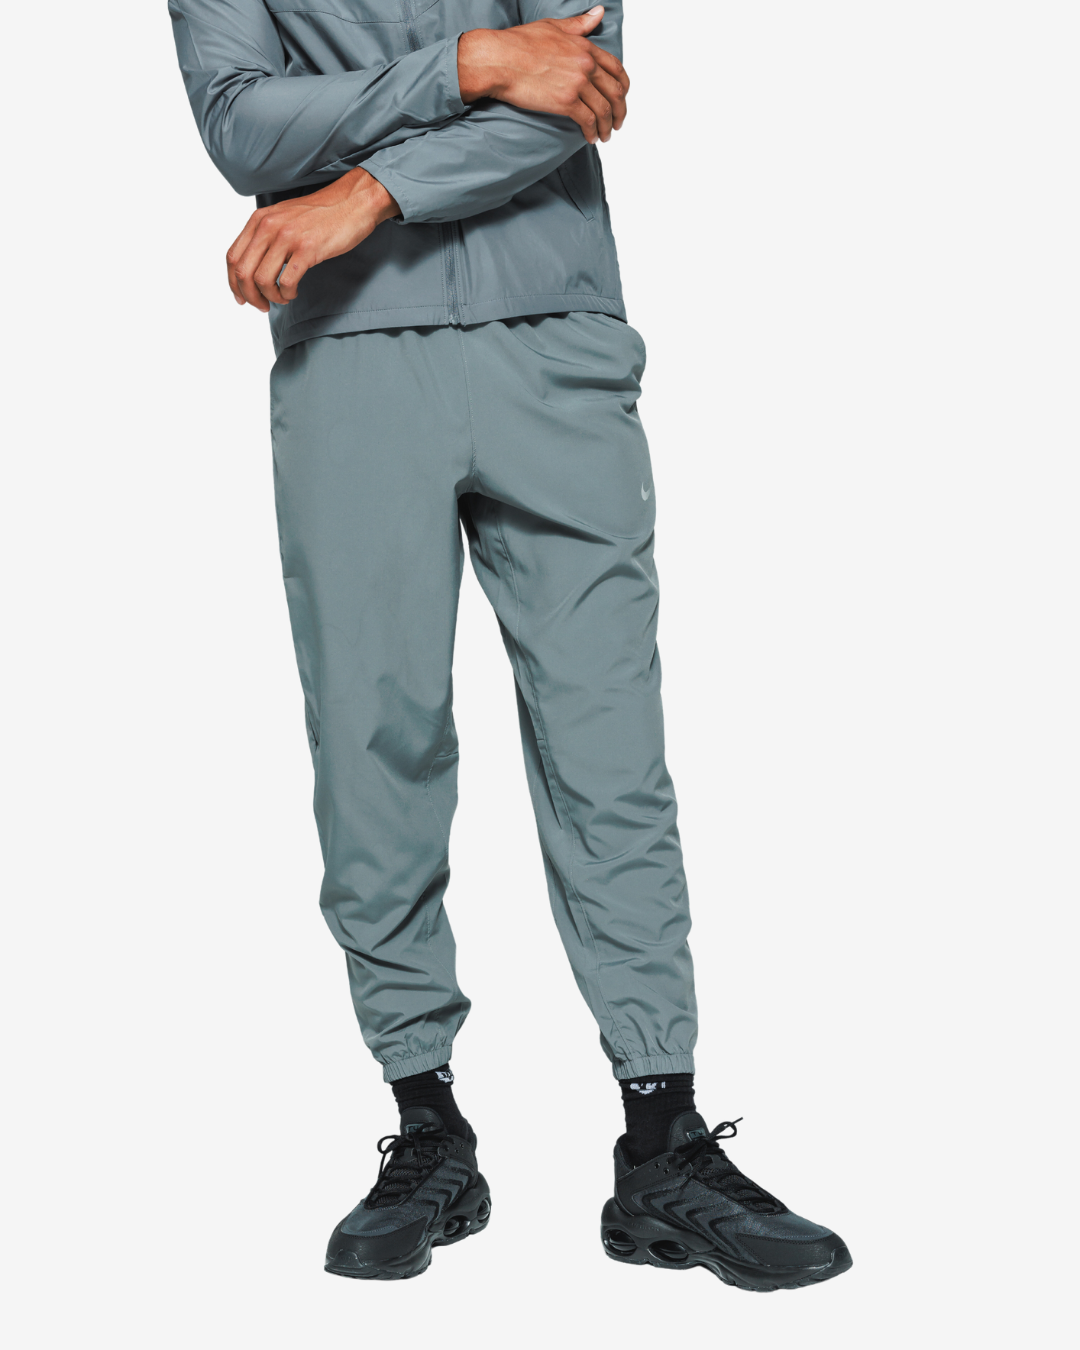 Nike Form Pants - Gray